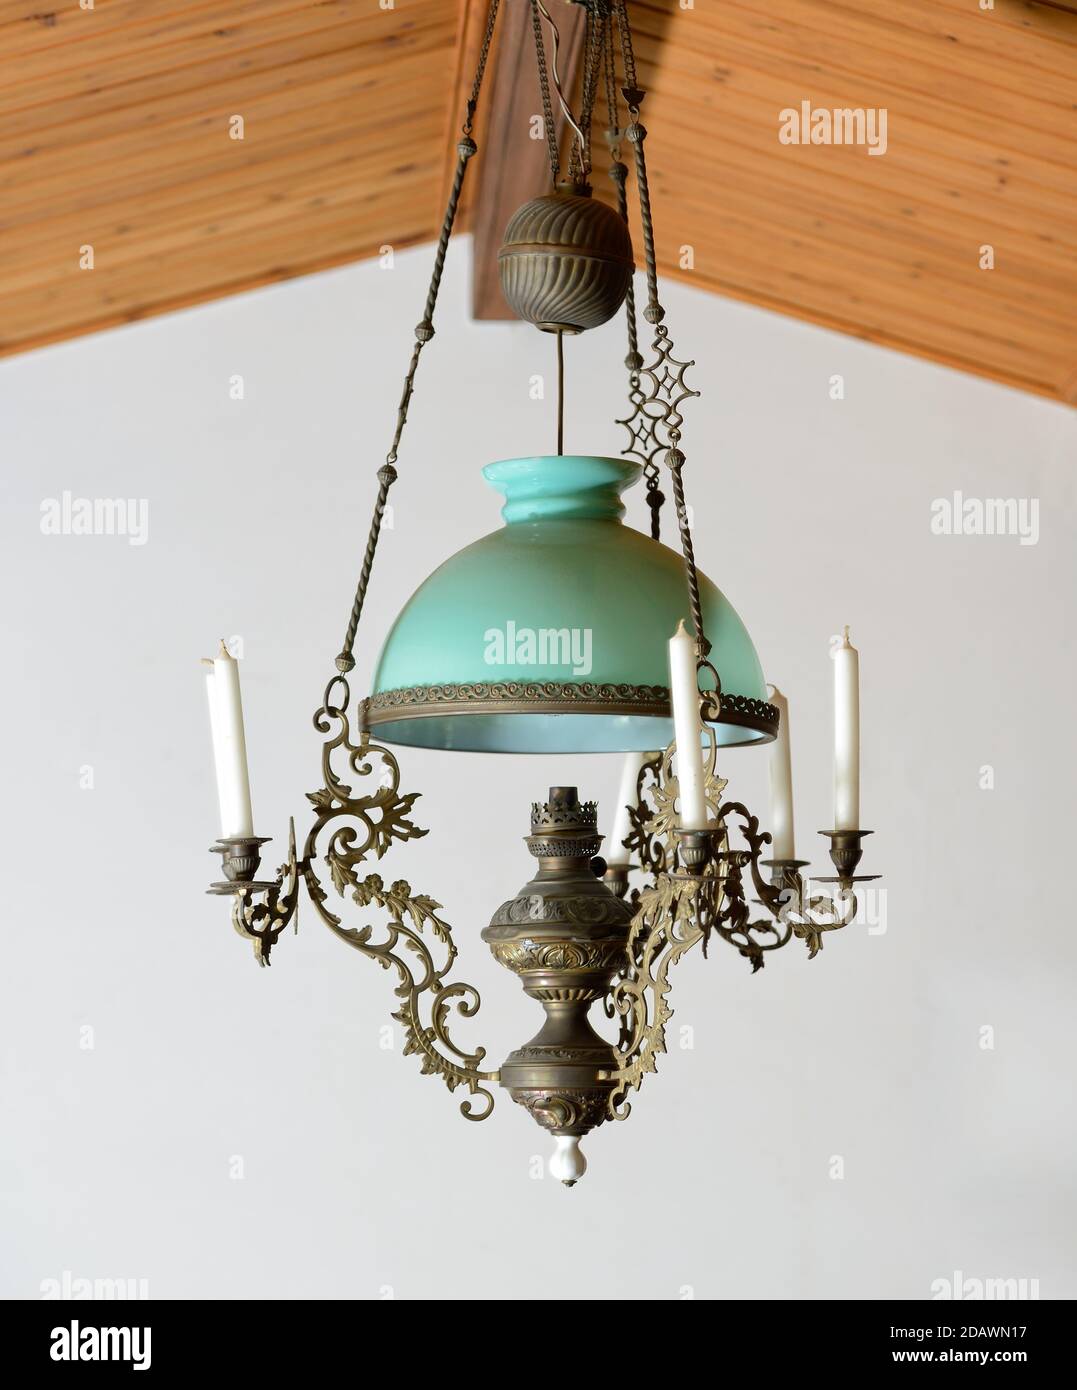 Ancien plafond en bois avec lampe à kérosène suspendue ancienne avec  bougies Photo Stock - Alamy